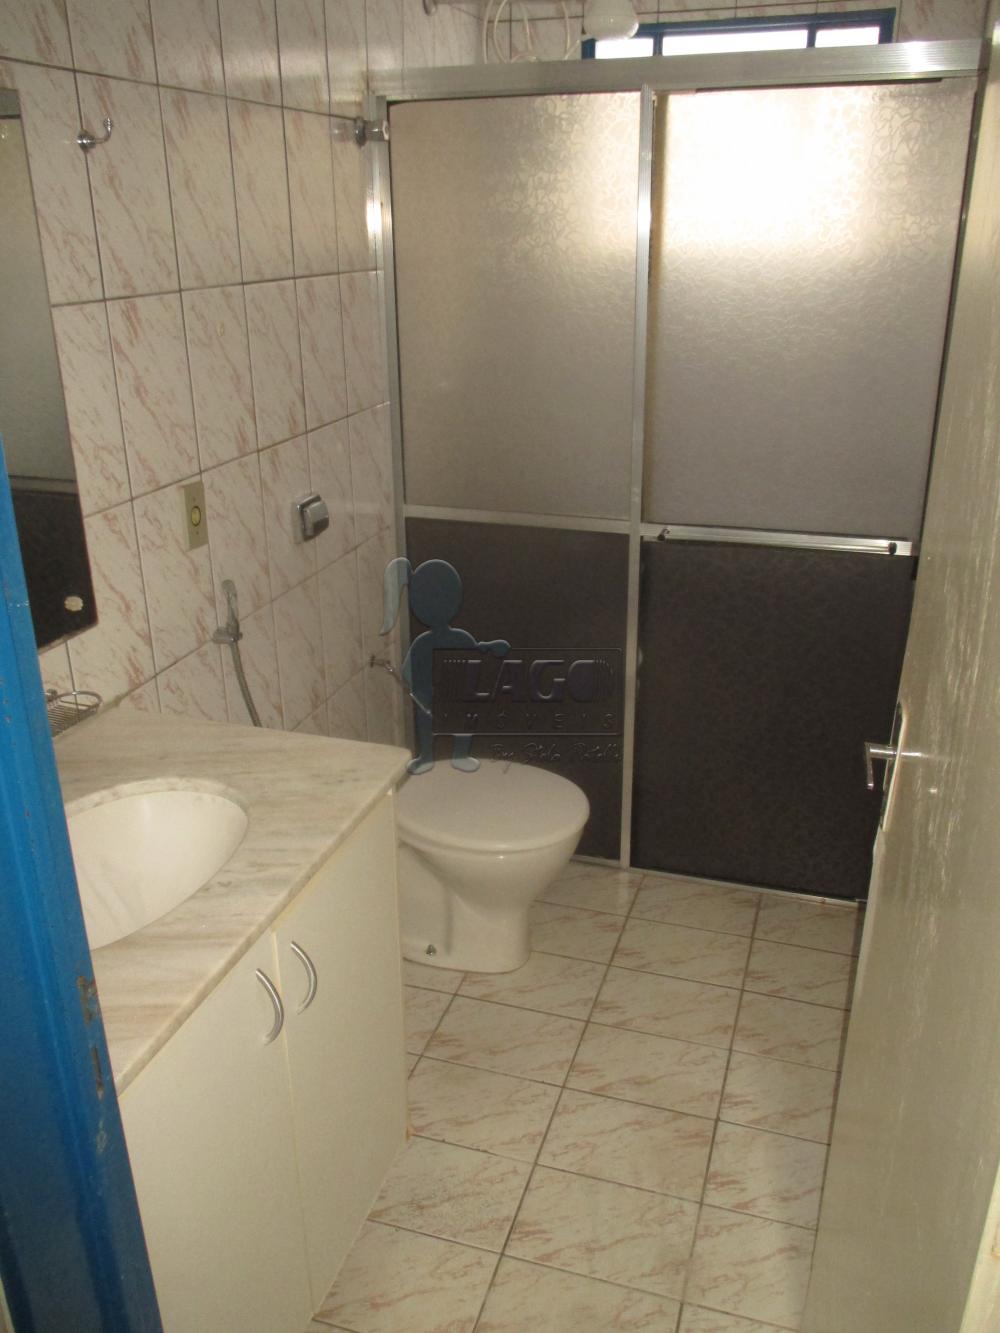 Alugar Apartamentos / Kitchenet / Flat em Ribeirão Preto R$ 750,00 - Foto 8